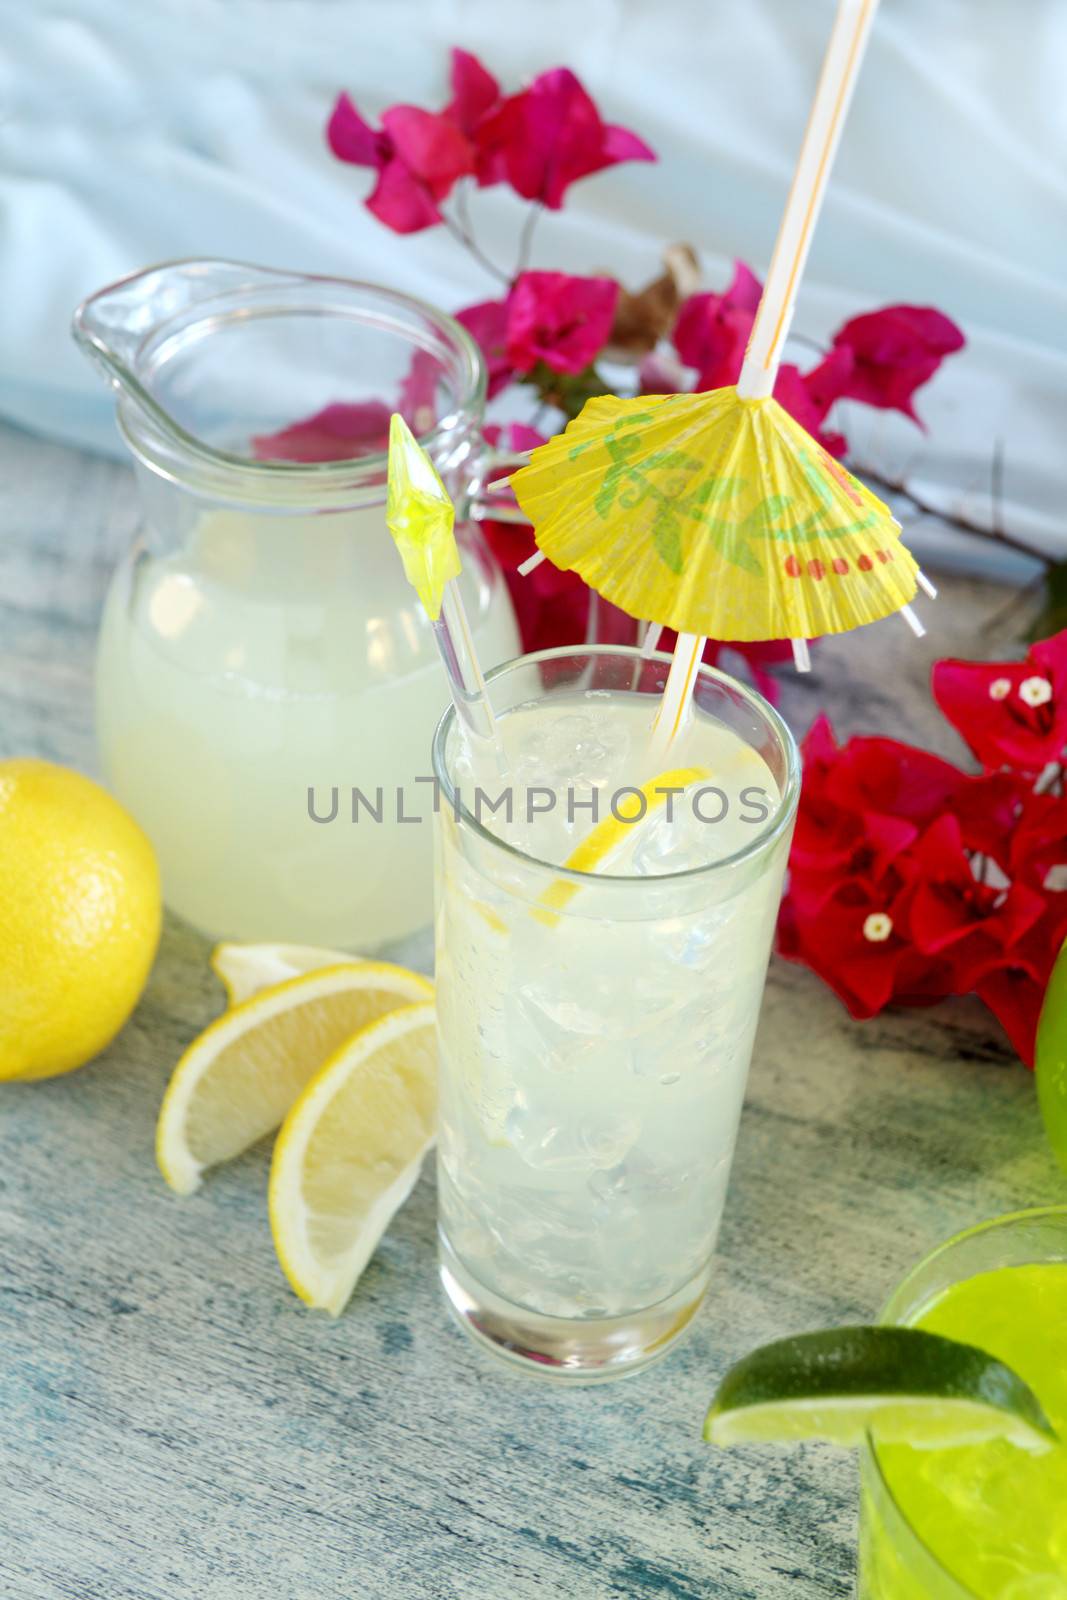 Lemon Drink by jabiru